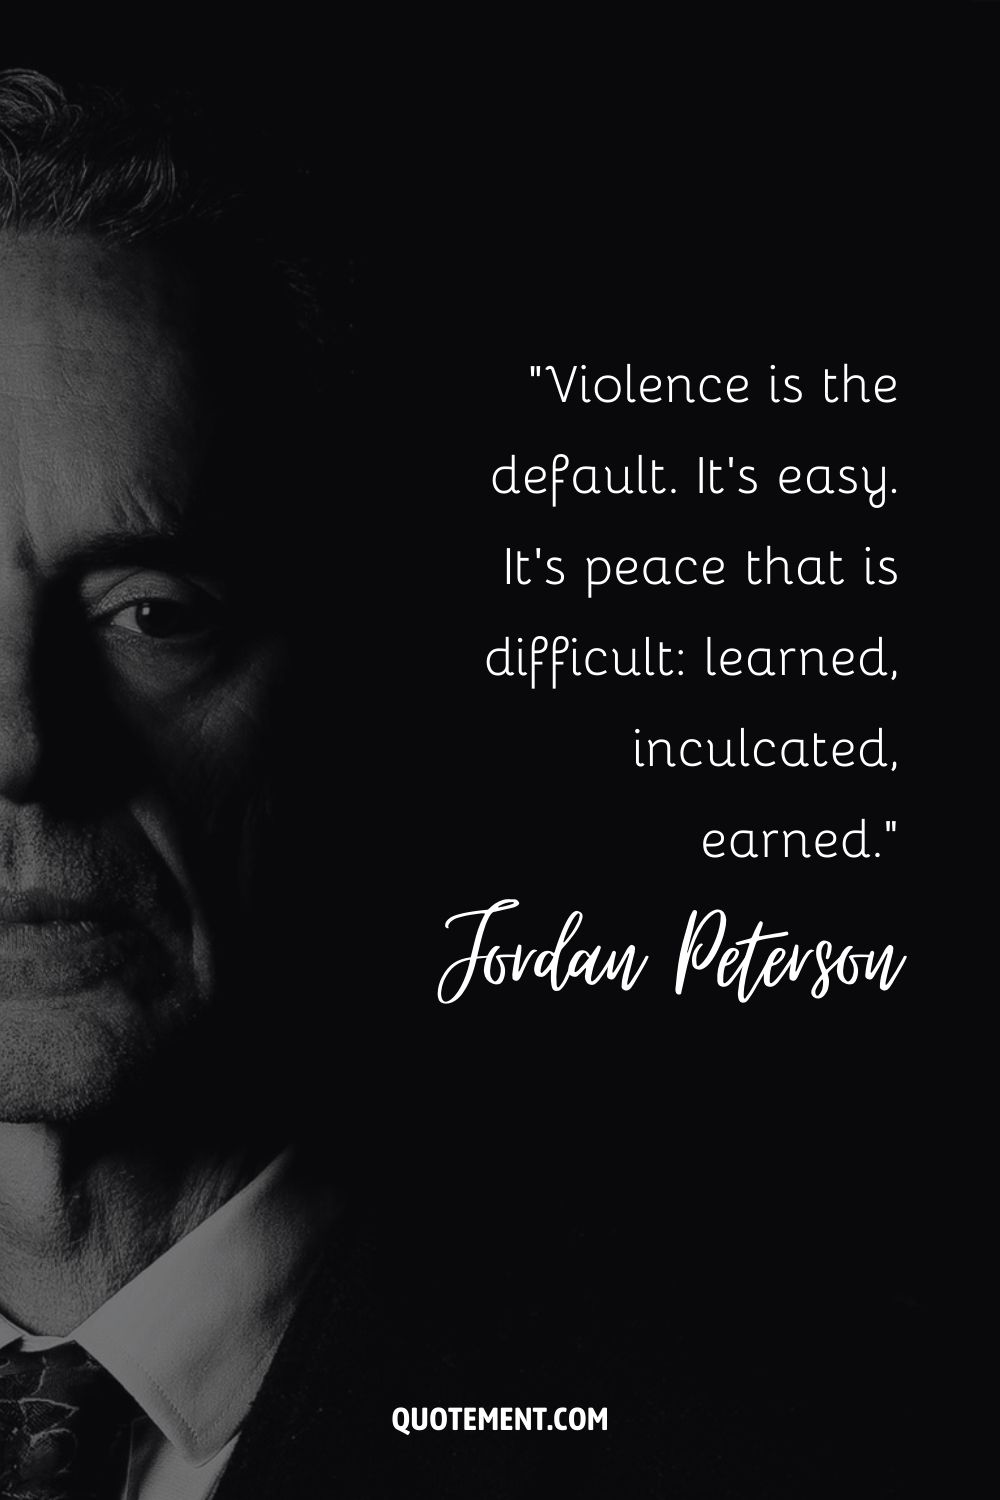 La violencia es la norma. Es fácil. Es la paz la que cuesta aprender, inculcar, ganarse